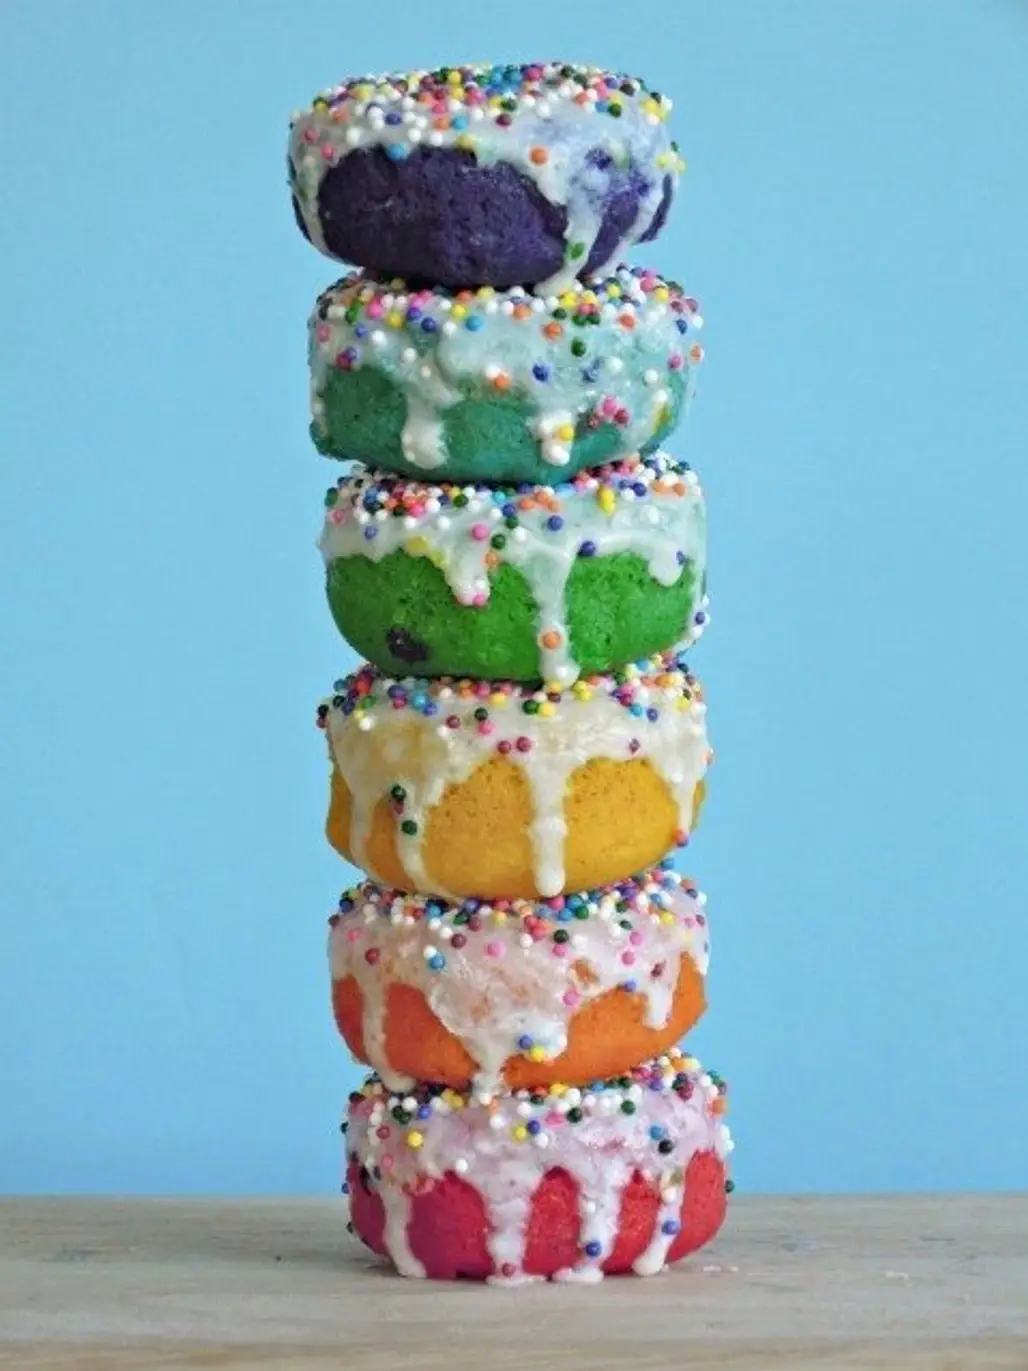 Rainbow Sprinkled Doughnuts